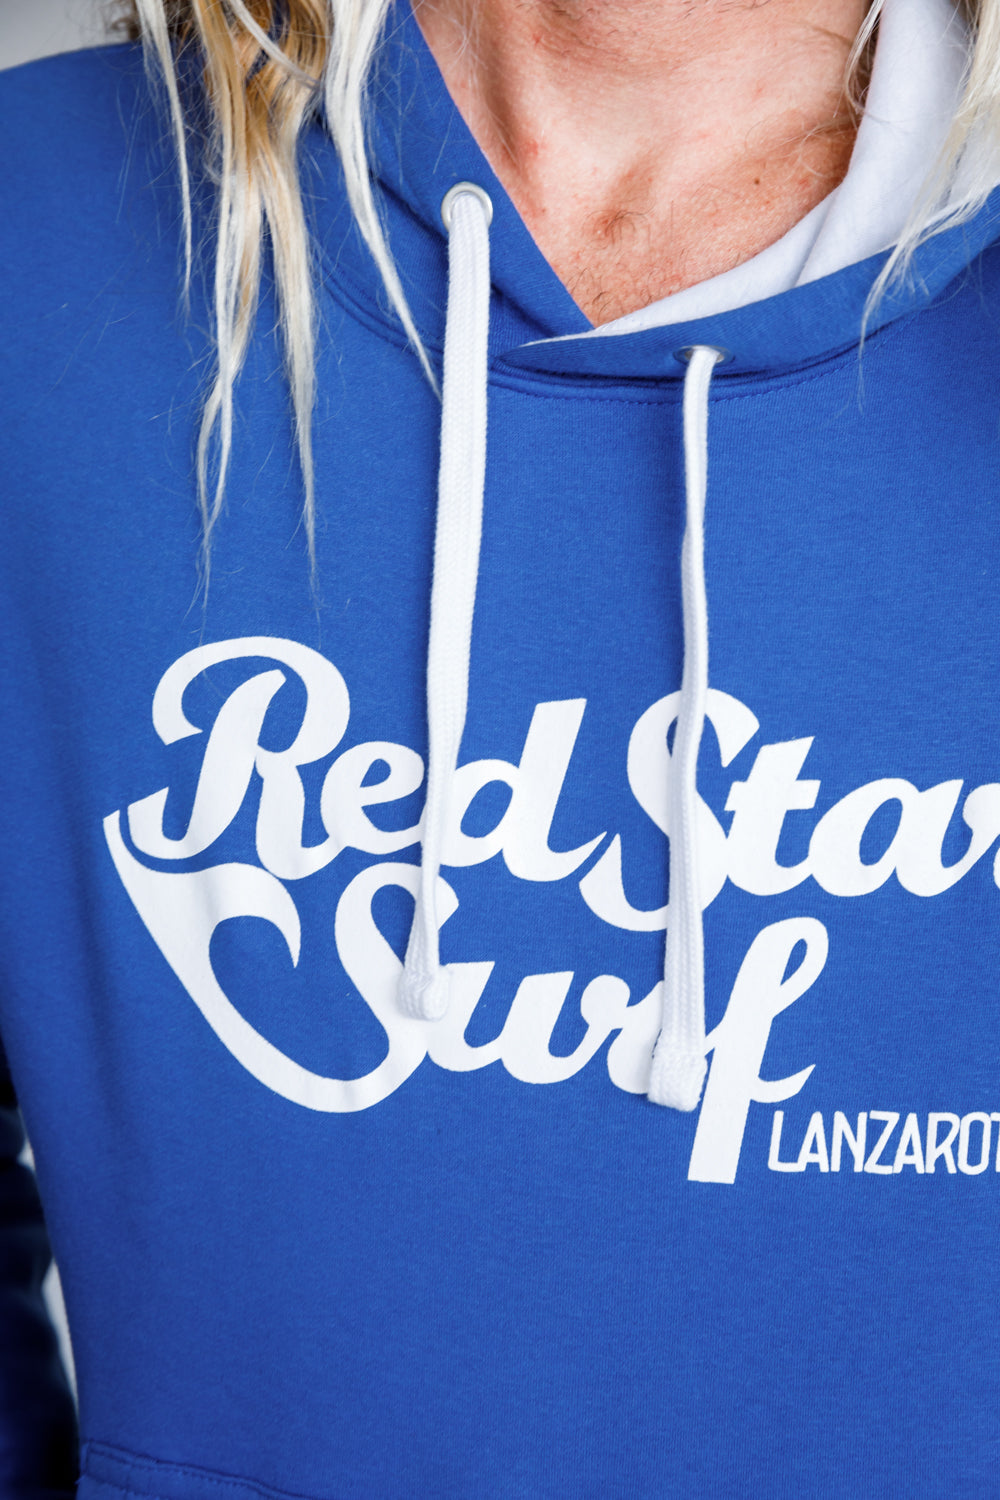 Red Star Surf - Sudadera con capucha de Hombre